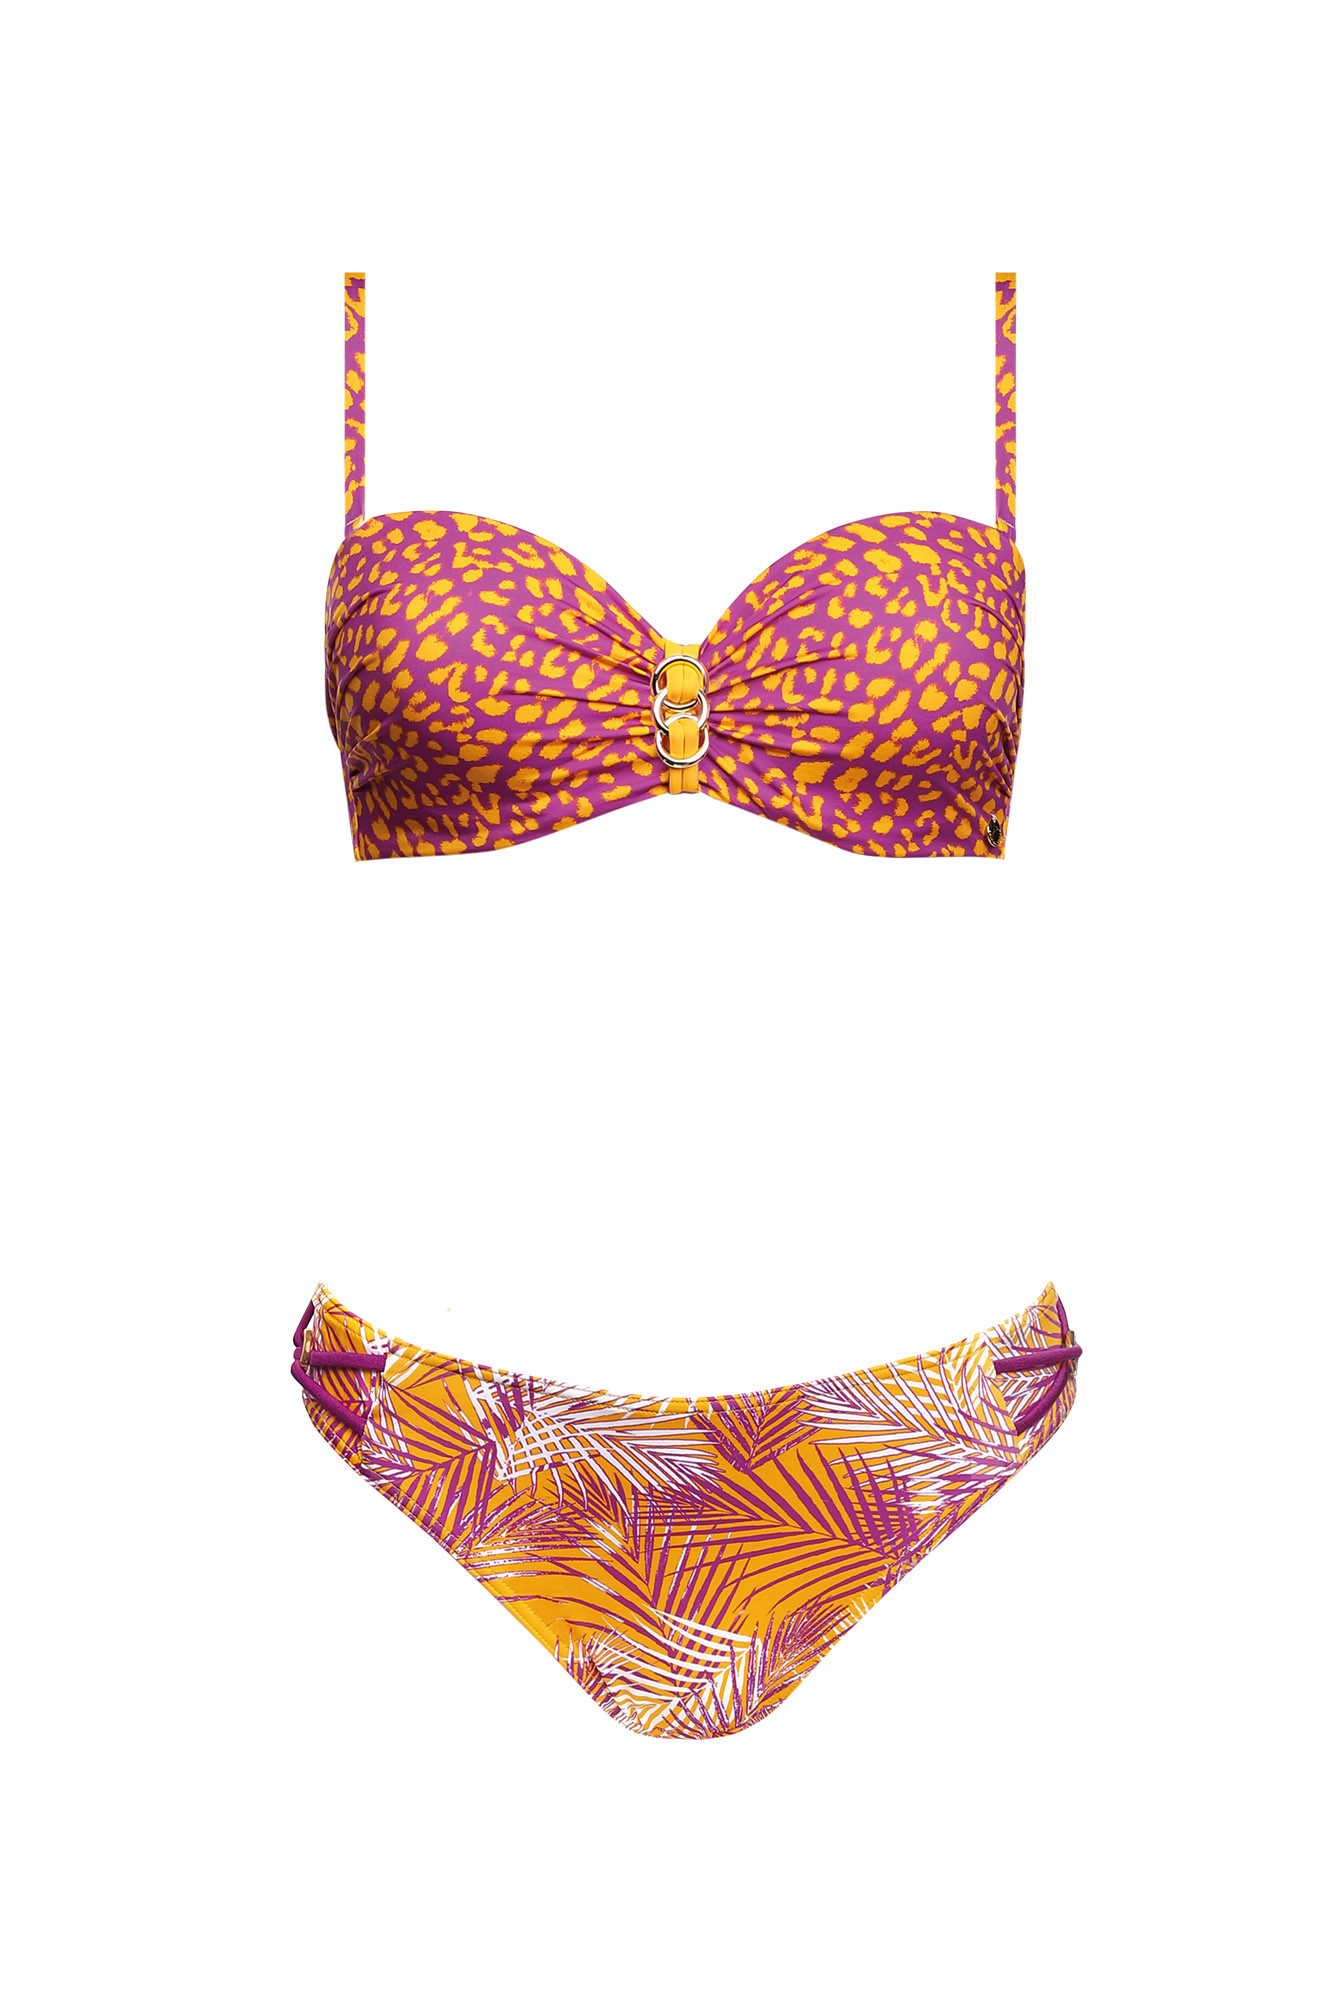 plavky Paradise 2 model 17387157 - Self Velikost: 40C, Barvy: oranžová-fialová